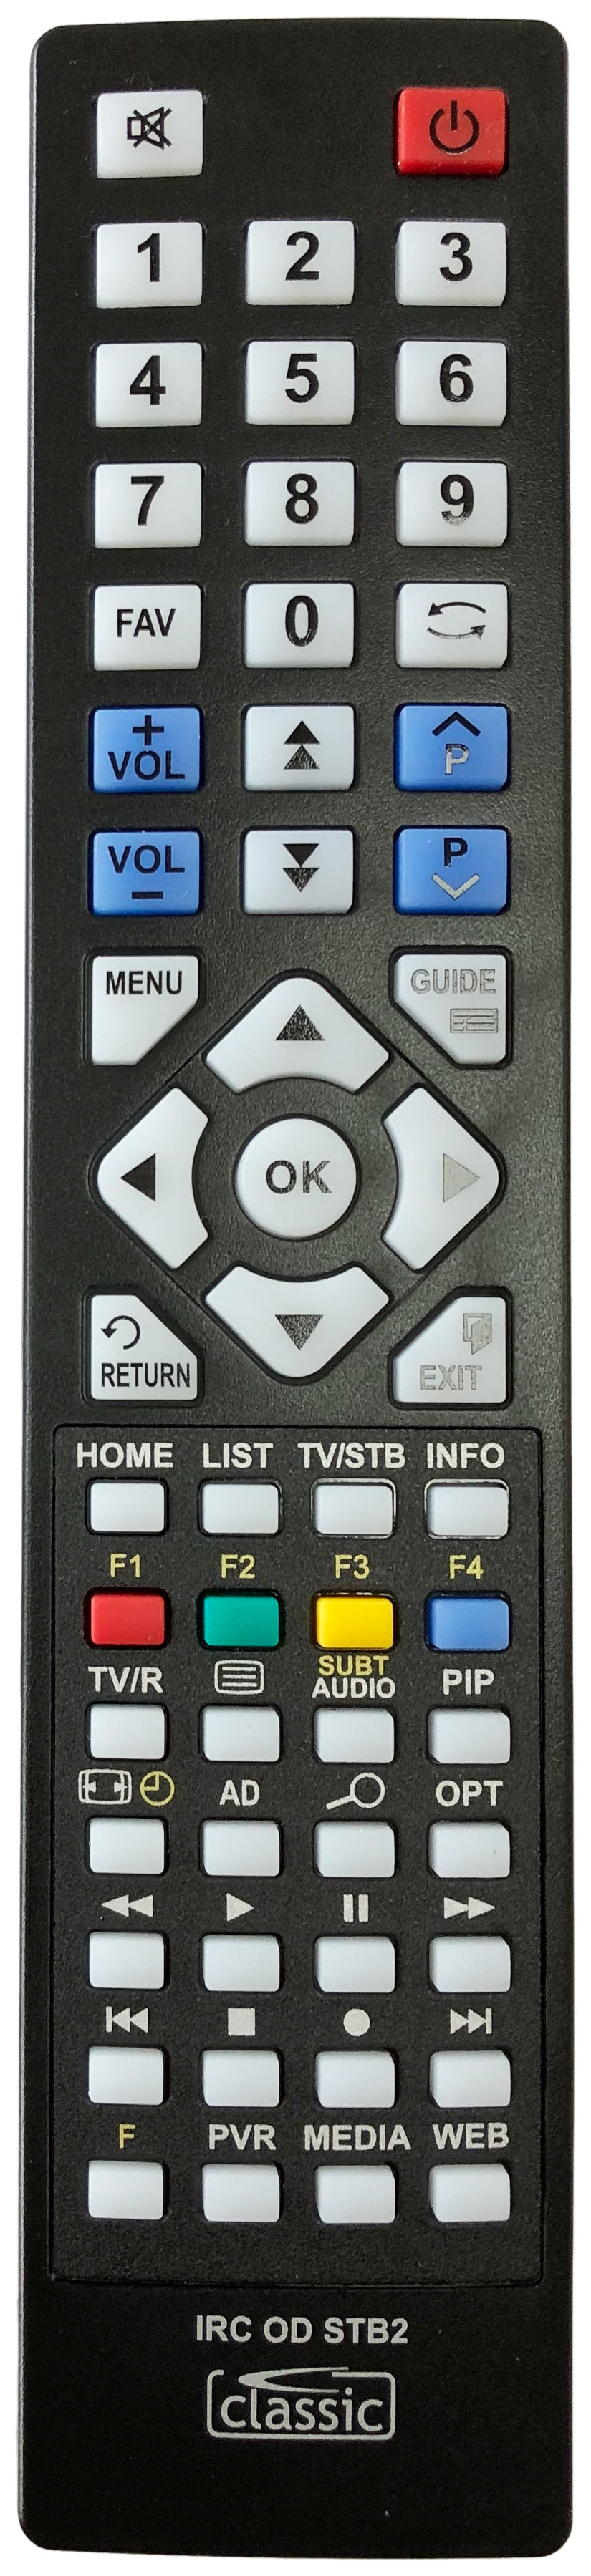 HUMAX HDR-1010S Remote Control Alternative